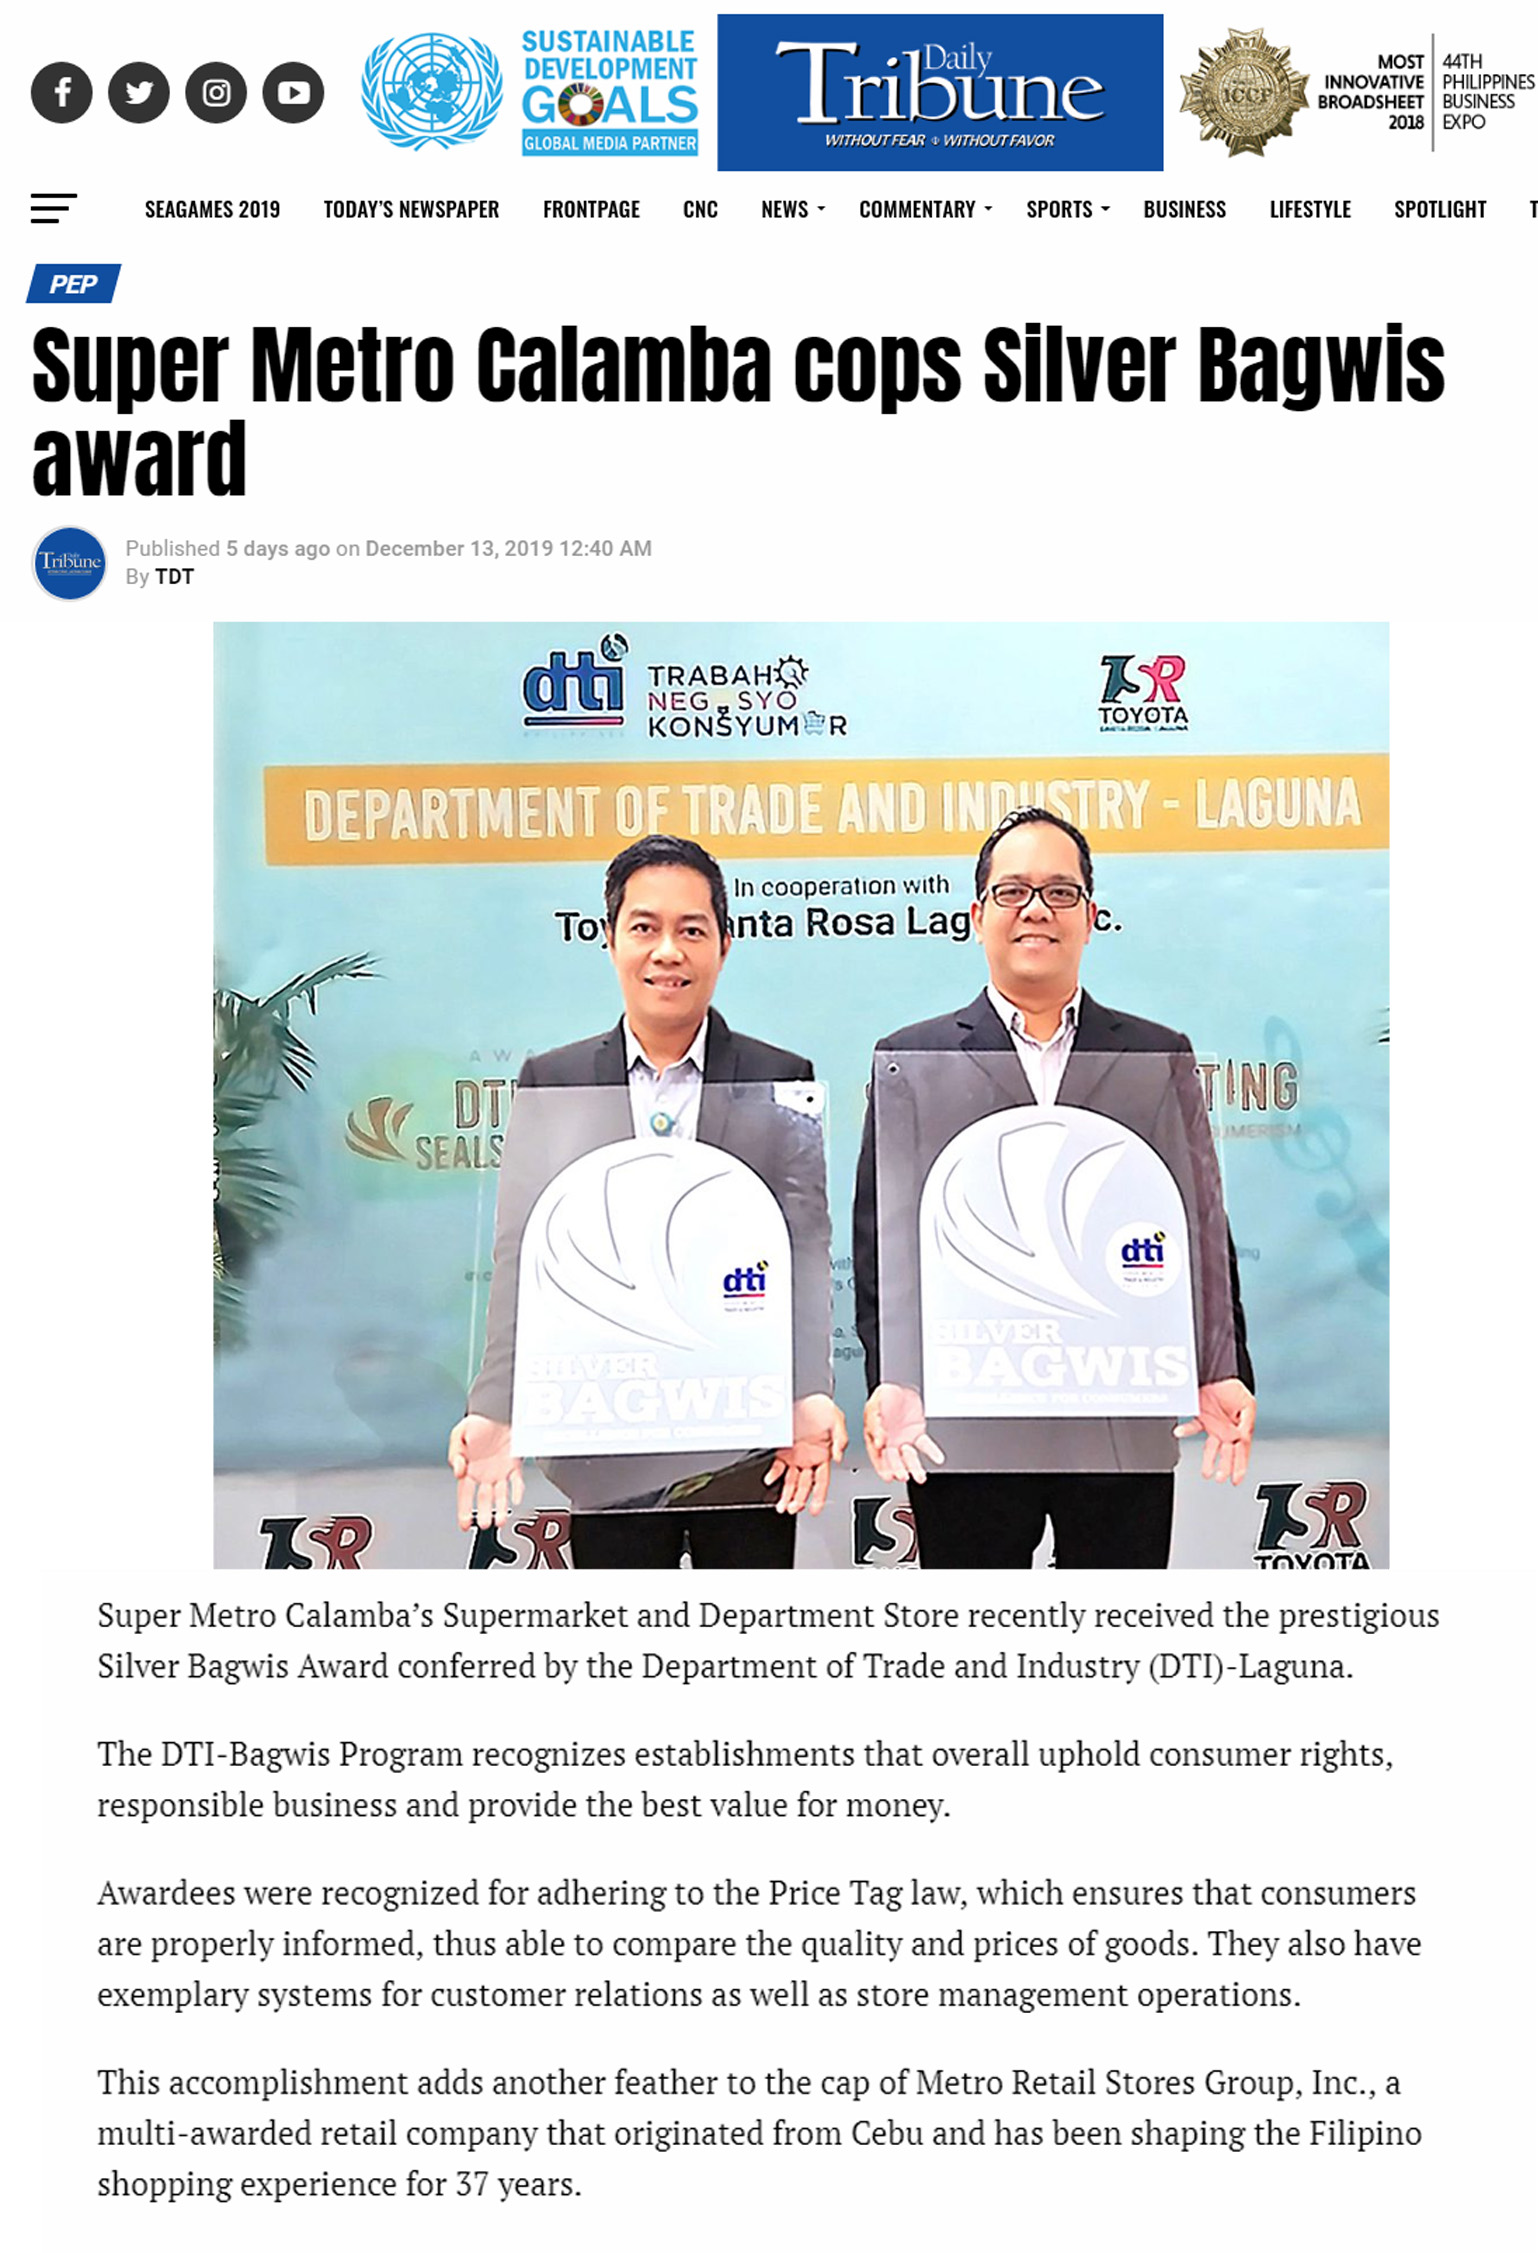 December 13 2019 Super Metro Calamba cops Silver Bagwis award Philippines Daily Tribunewww.tribune.net.ph